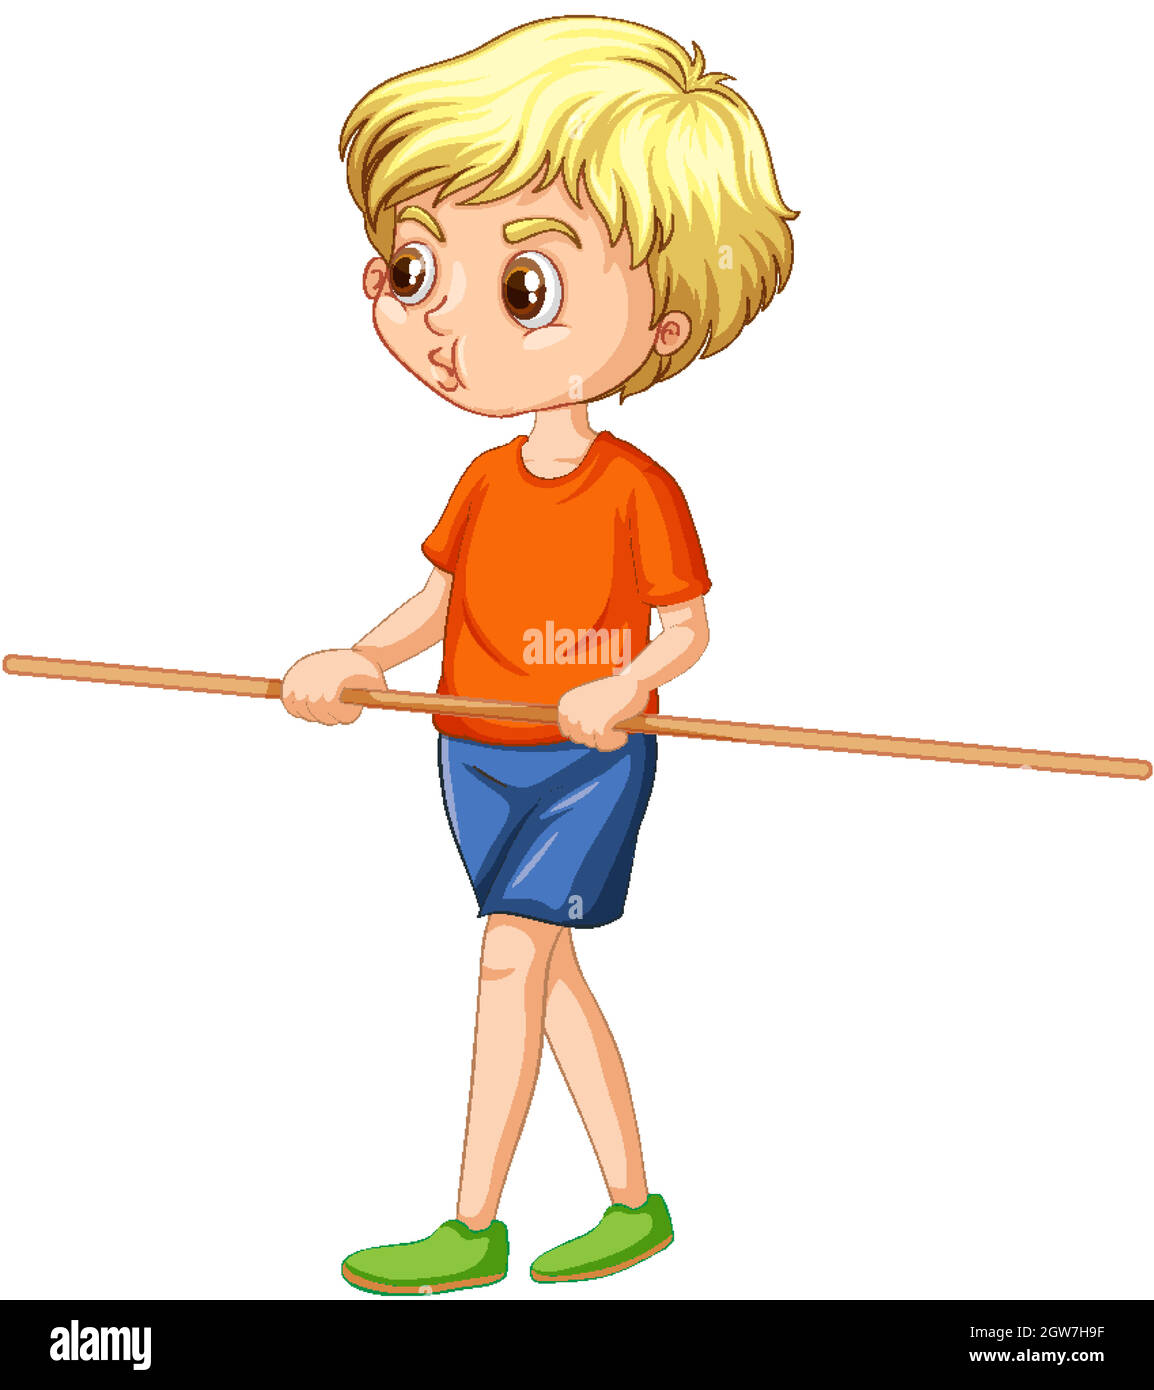 Un personnage de dessin animé de garçon tenant un support en bois Illustration de Vecteur